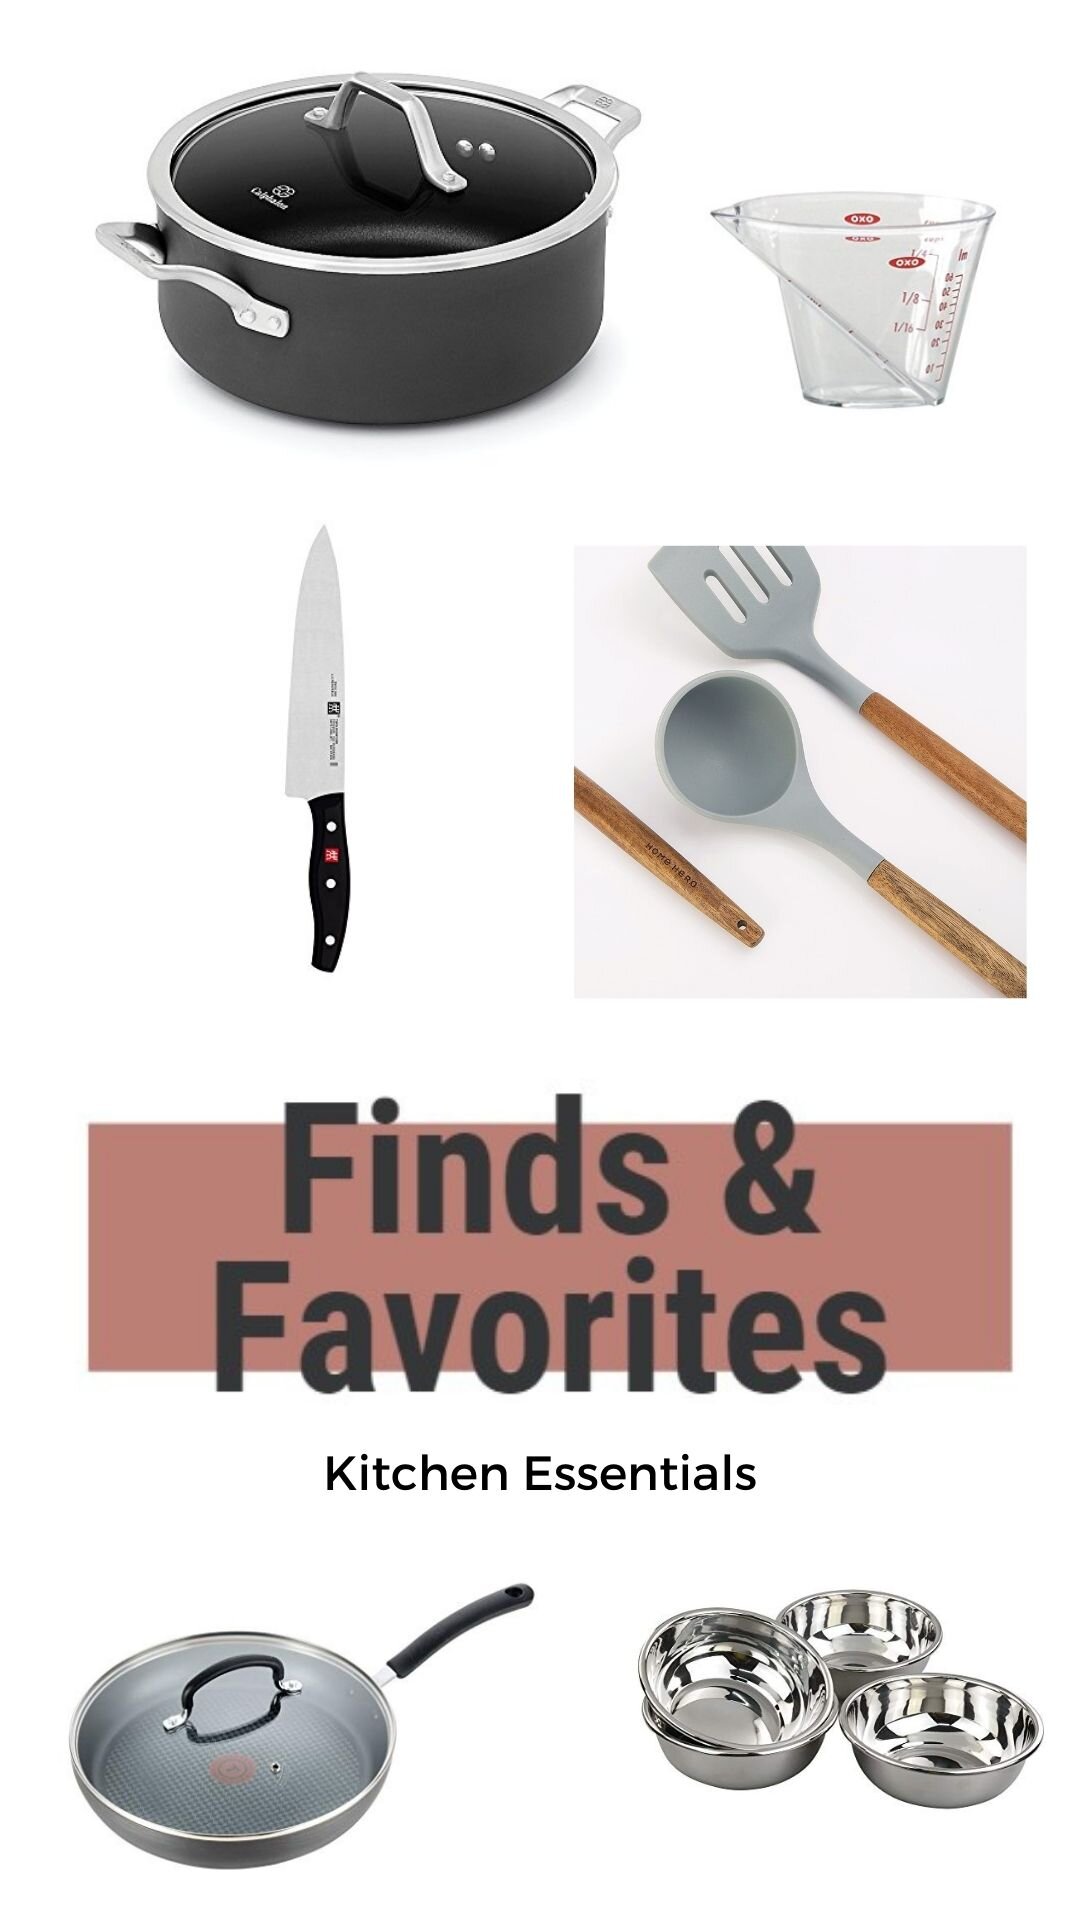 10 Kitchen Essentials That Make Cooking Easier